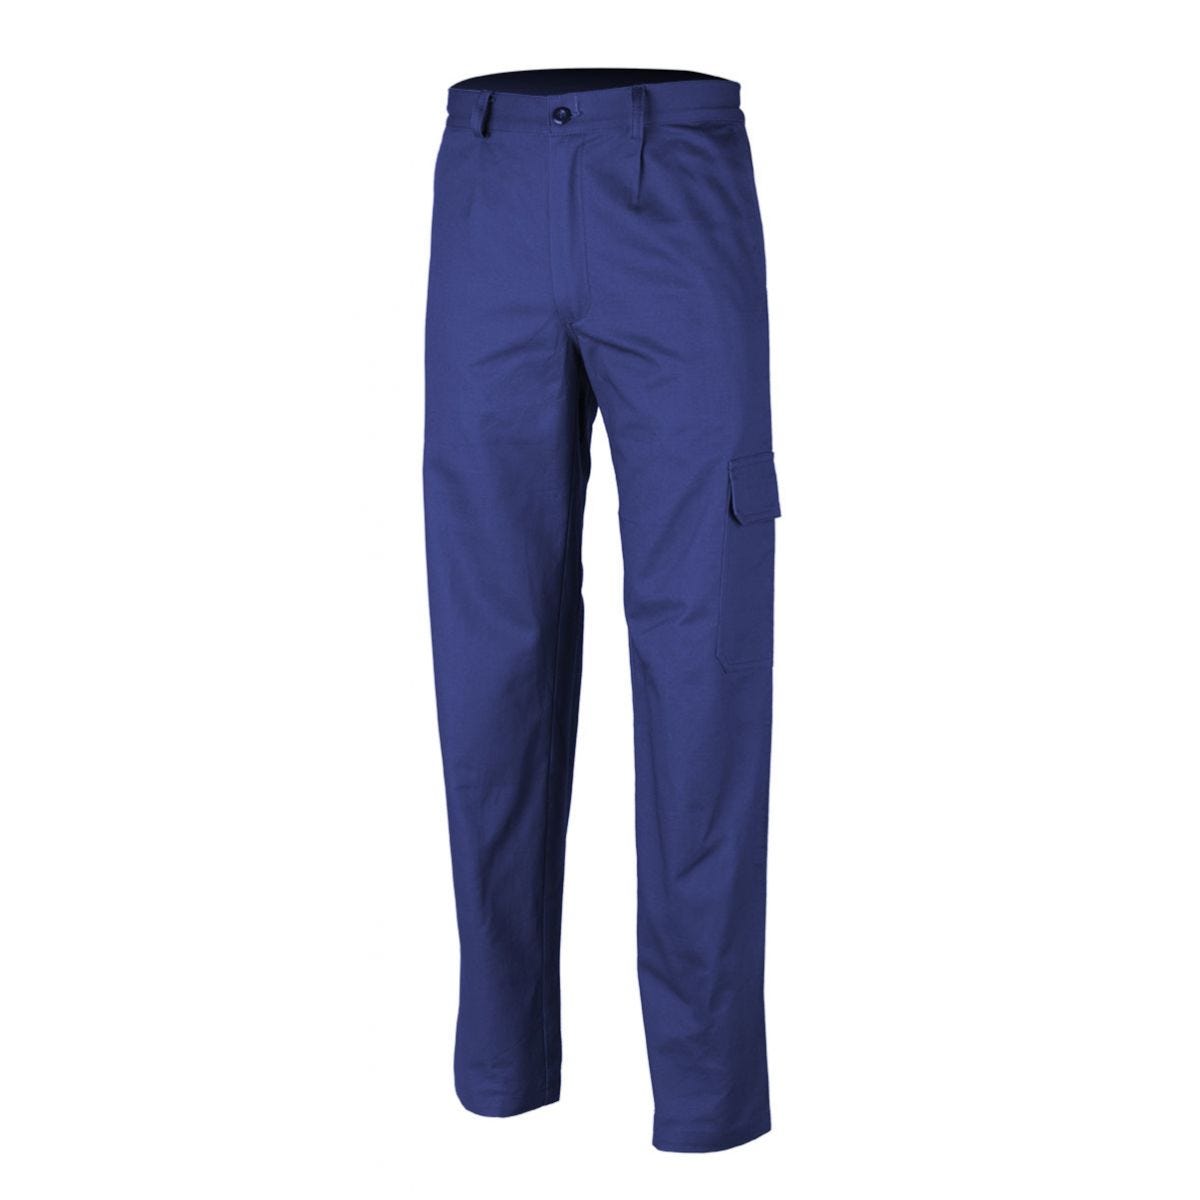 Pantalon PARTNER bleu royal - COVERGUARD - Taille L 0